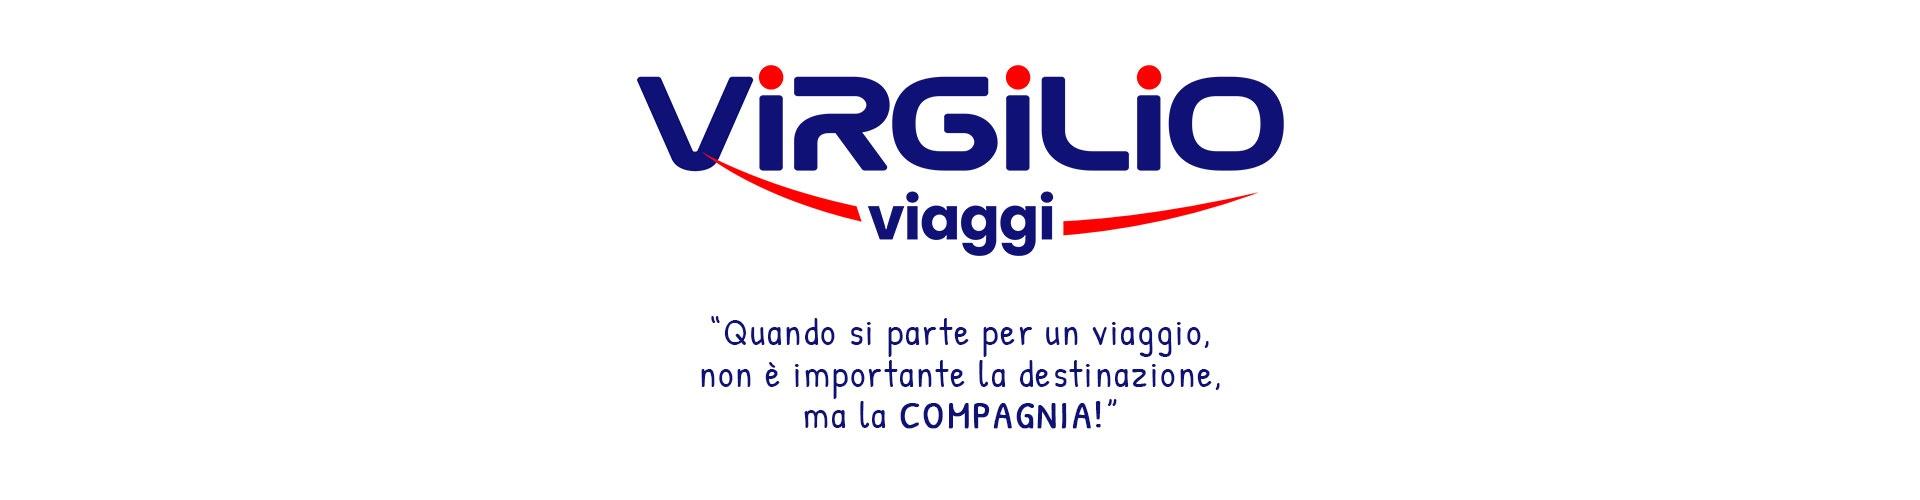 slide-virgilio